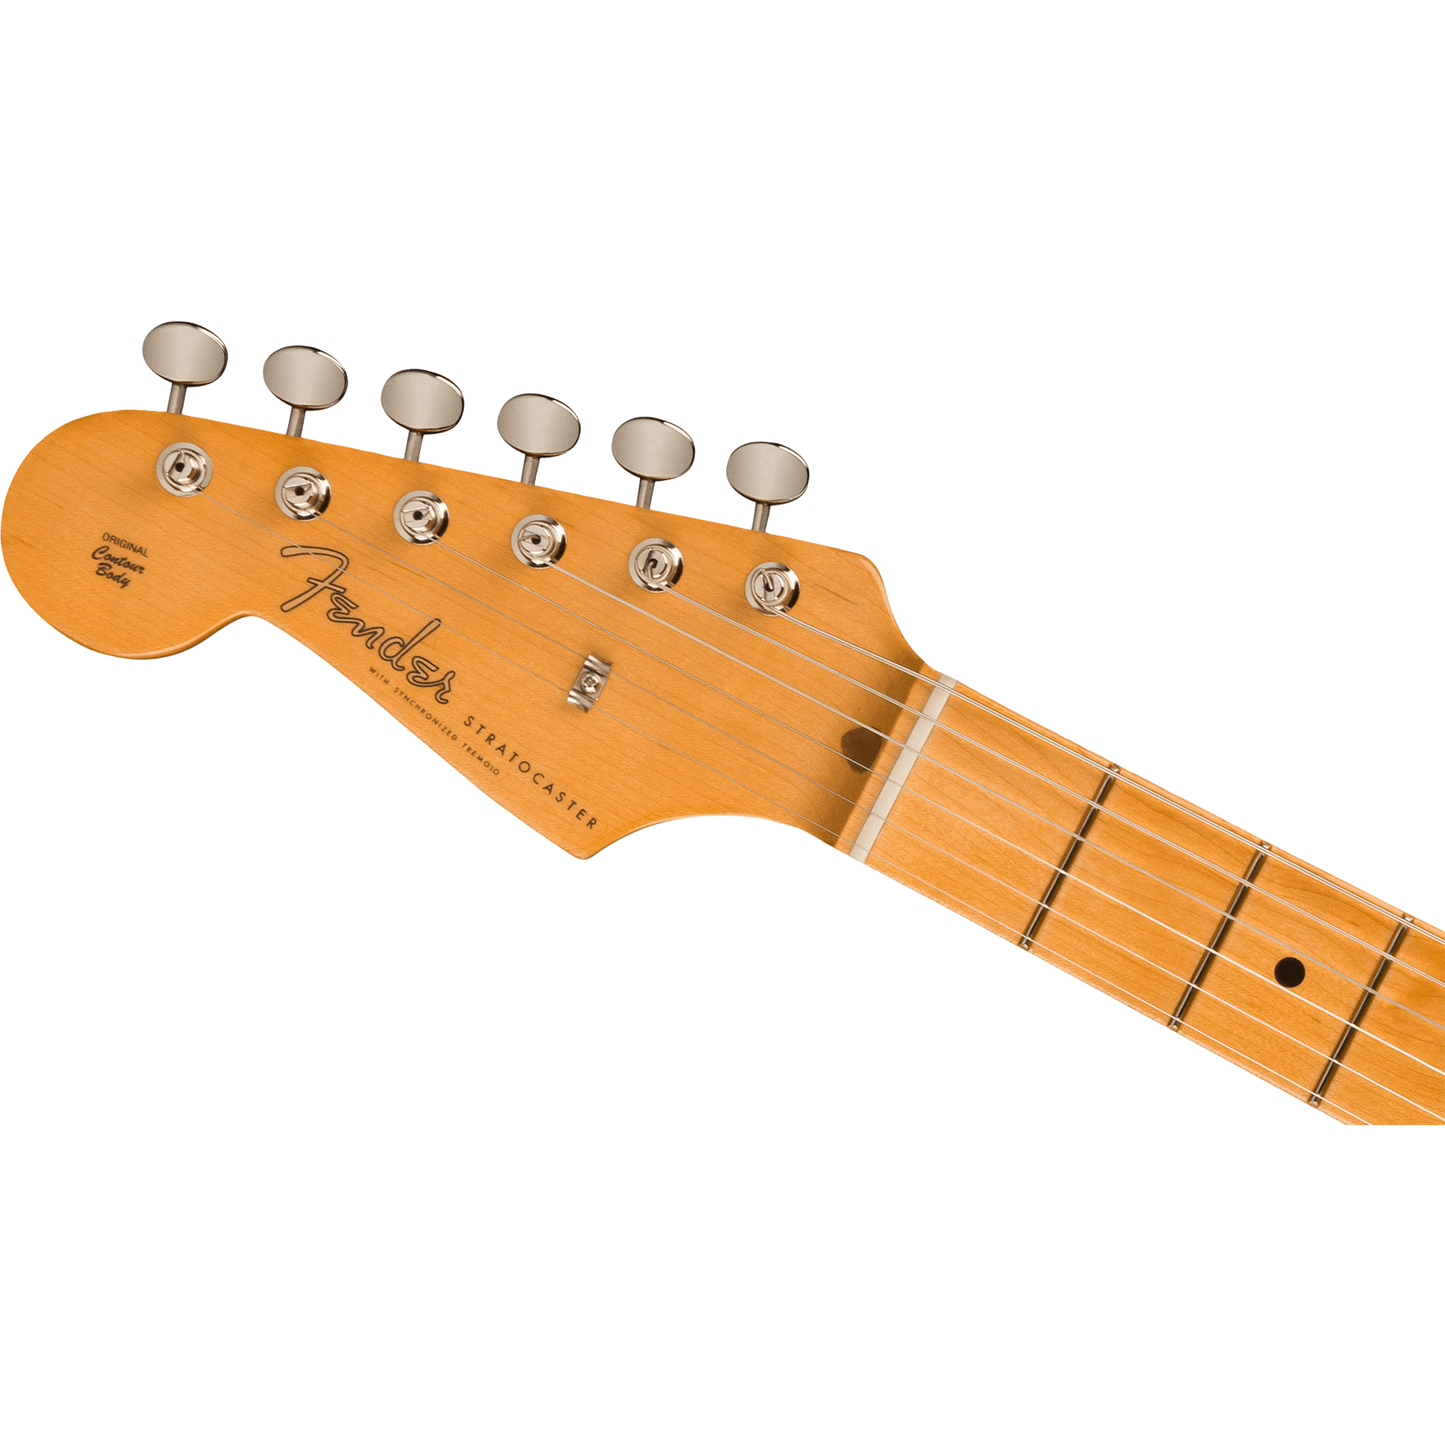 Fender American Vintage II 1957 Stratocaster Left-Hand Electric Guitar, 2-Color Sunburst